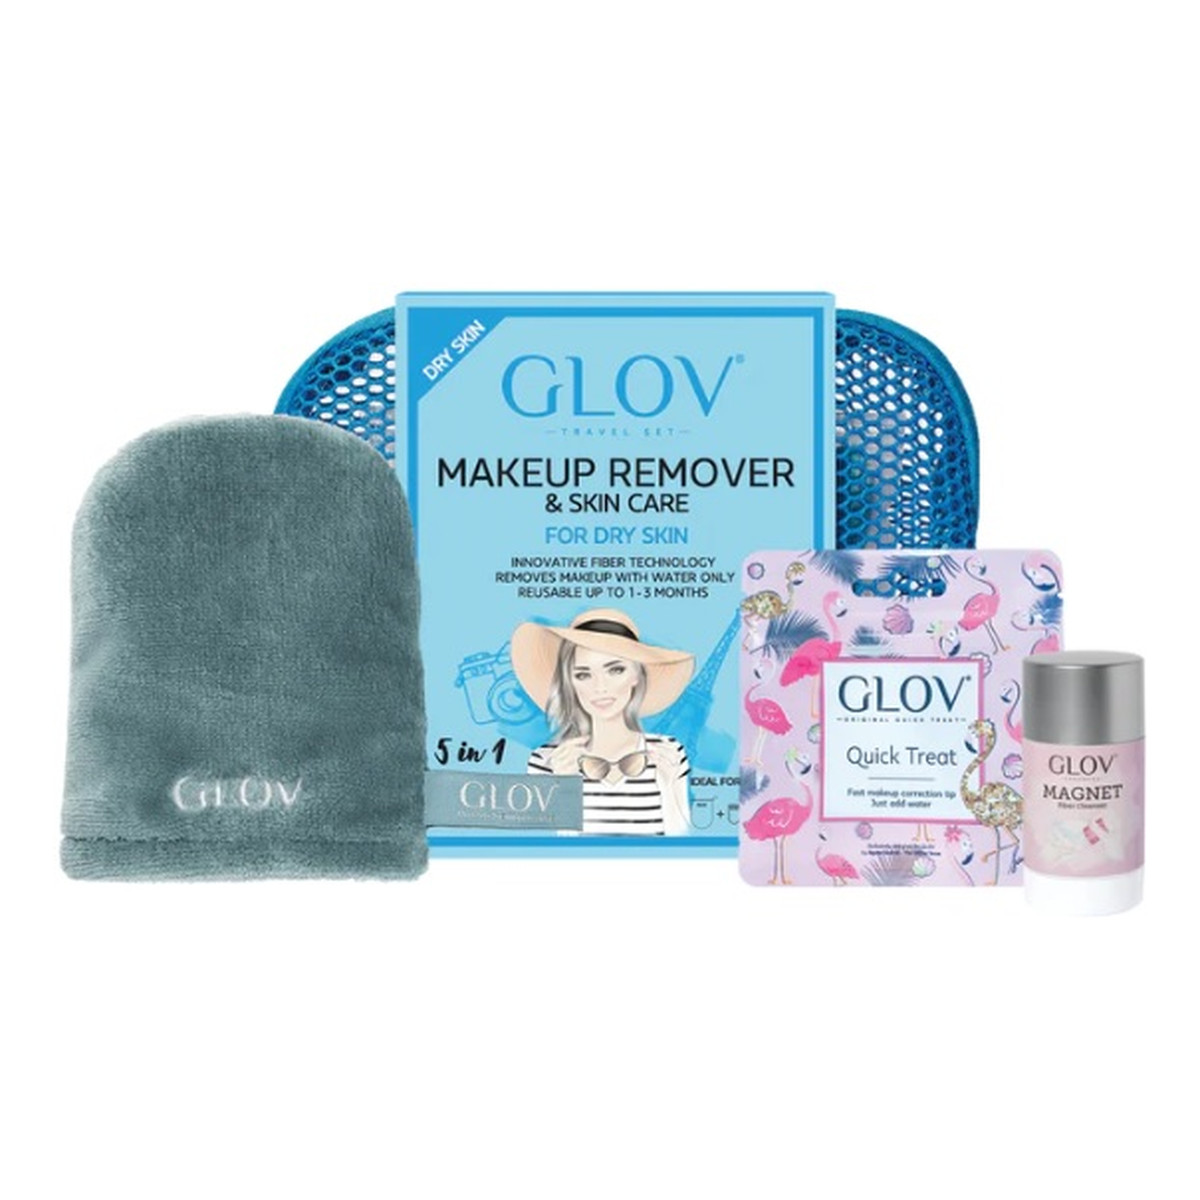 Glov Travel Set Dry Skin podróżny Zestaw on-the-go rękawica do oczyszczania cery suchej + quick treat do korekt makijażu + magnet cleanser do czyszczenia rękawic i pędzli + kosmetyczka